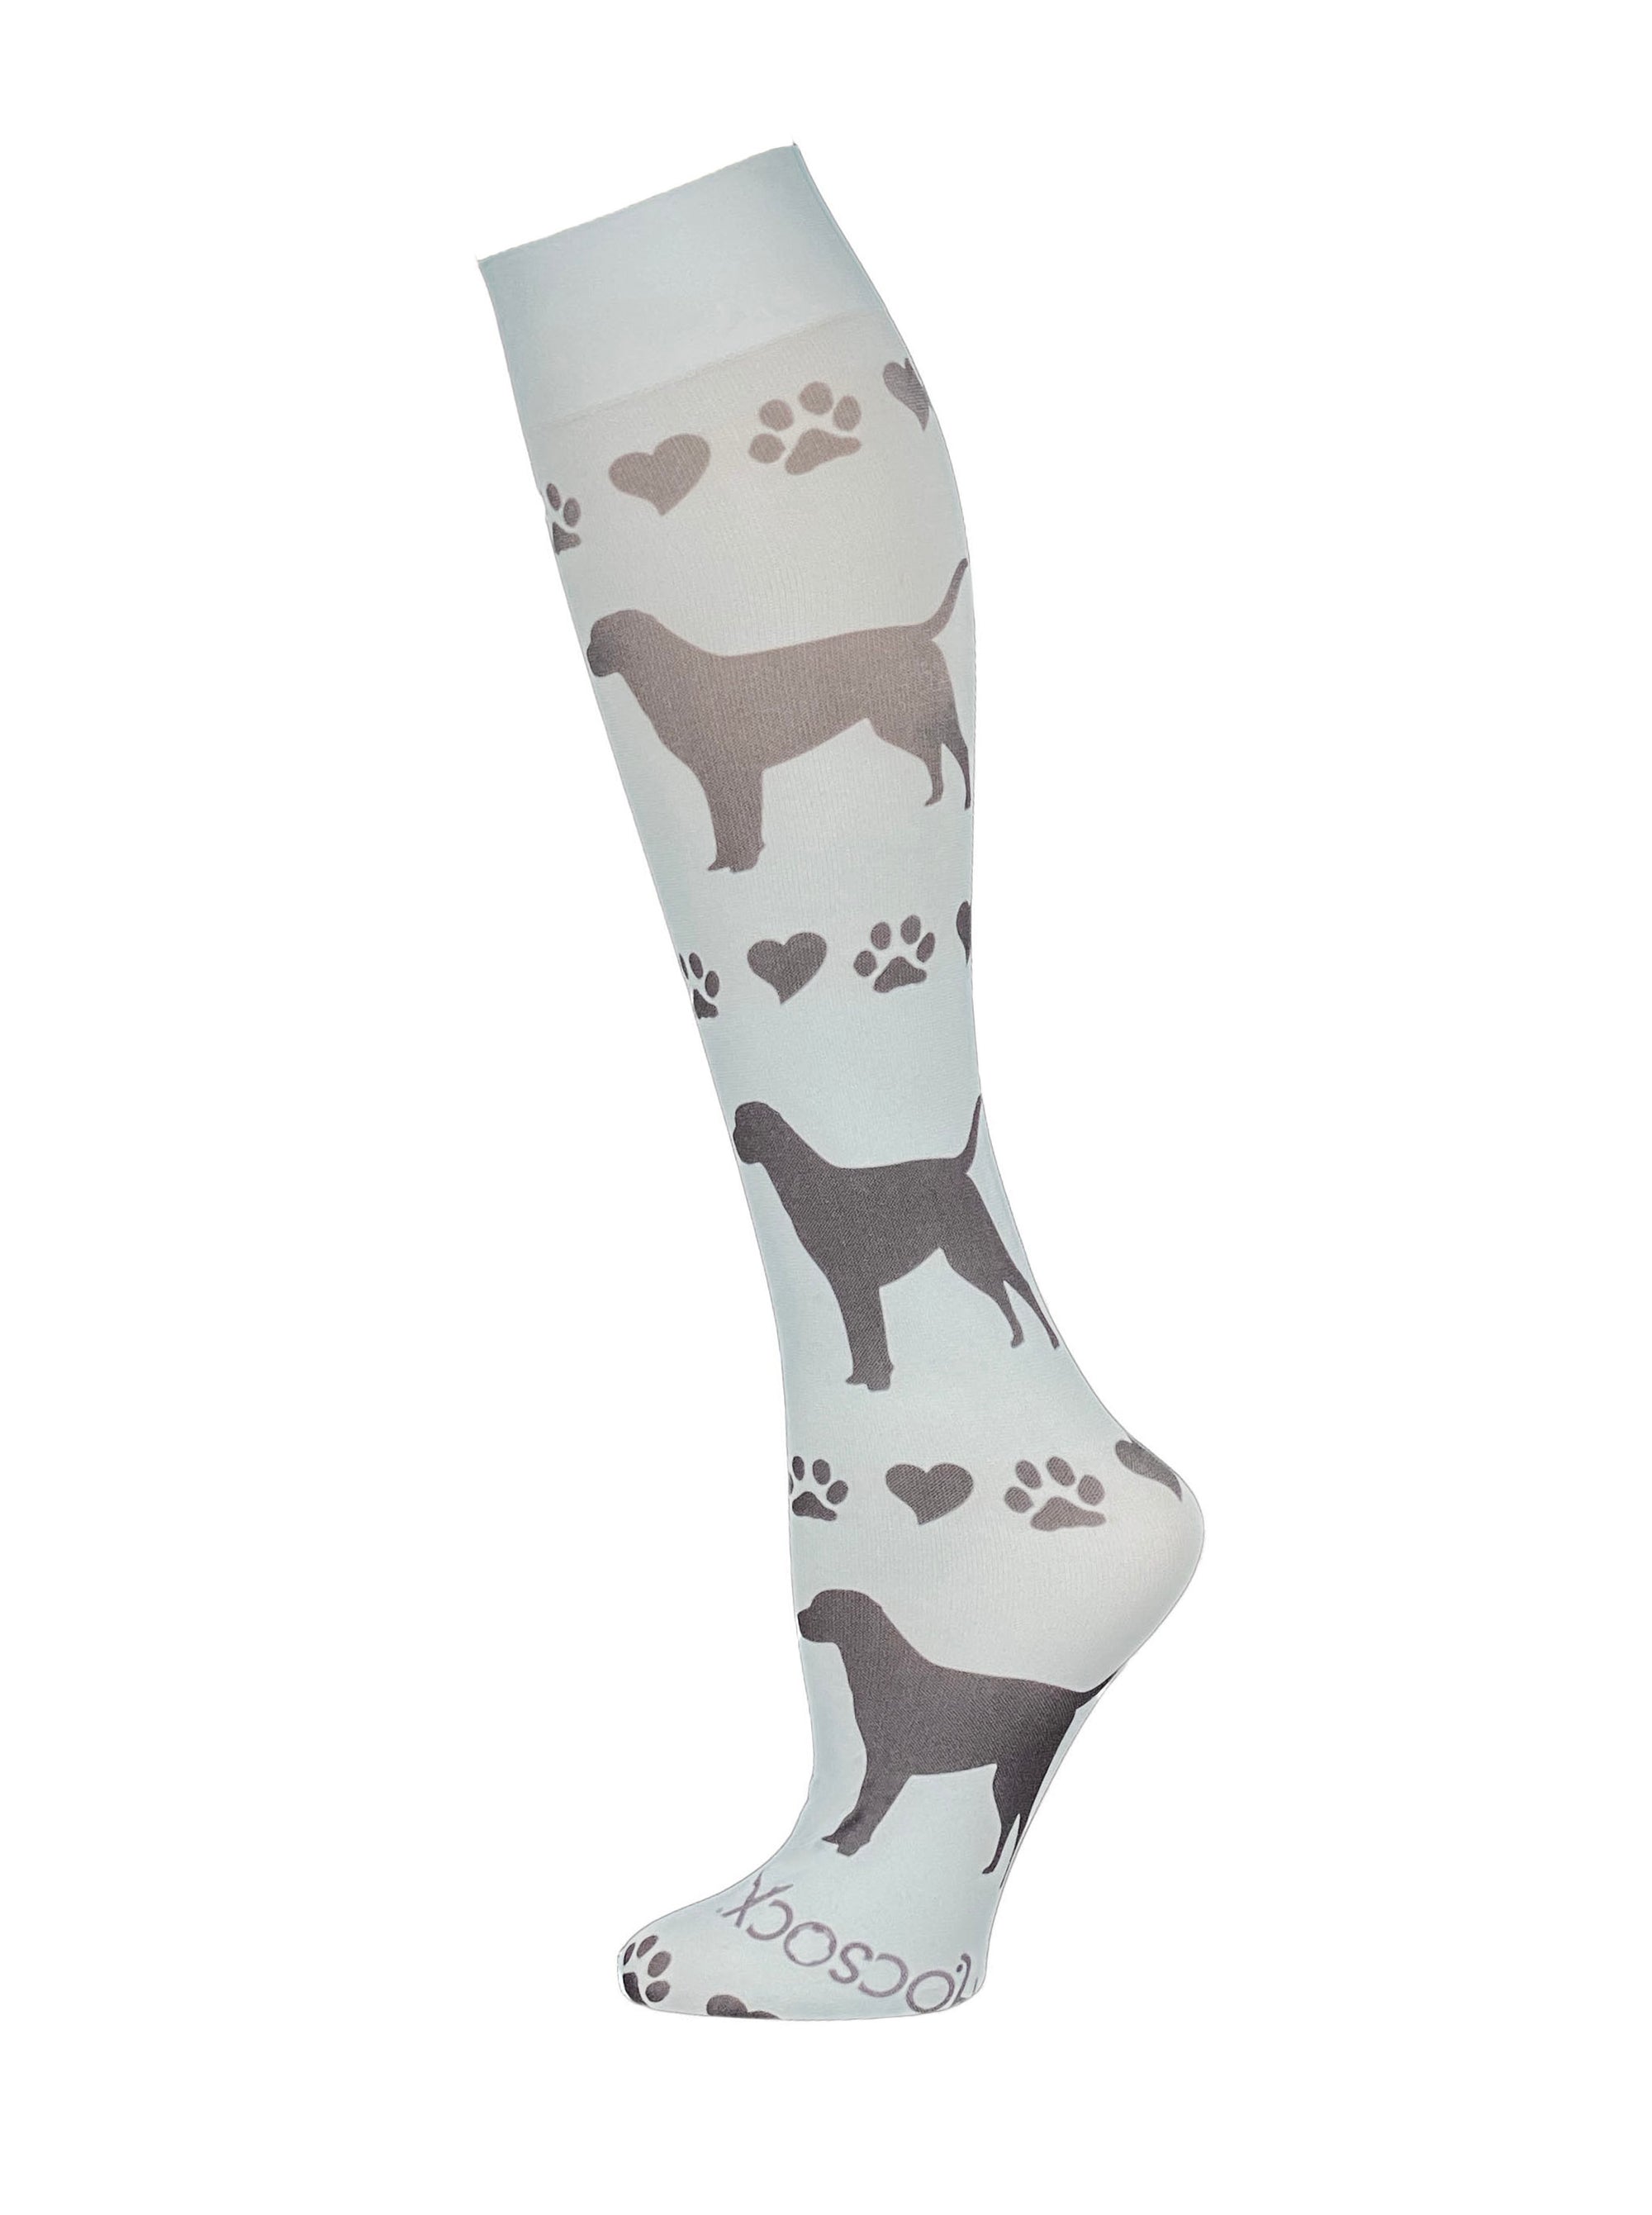 Doggie Love Socks